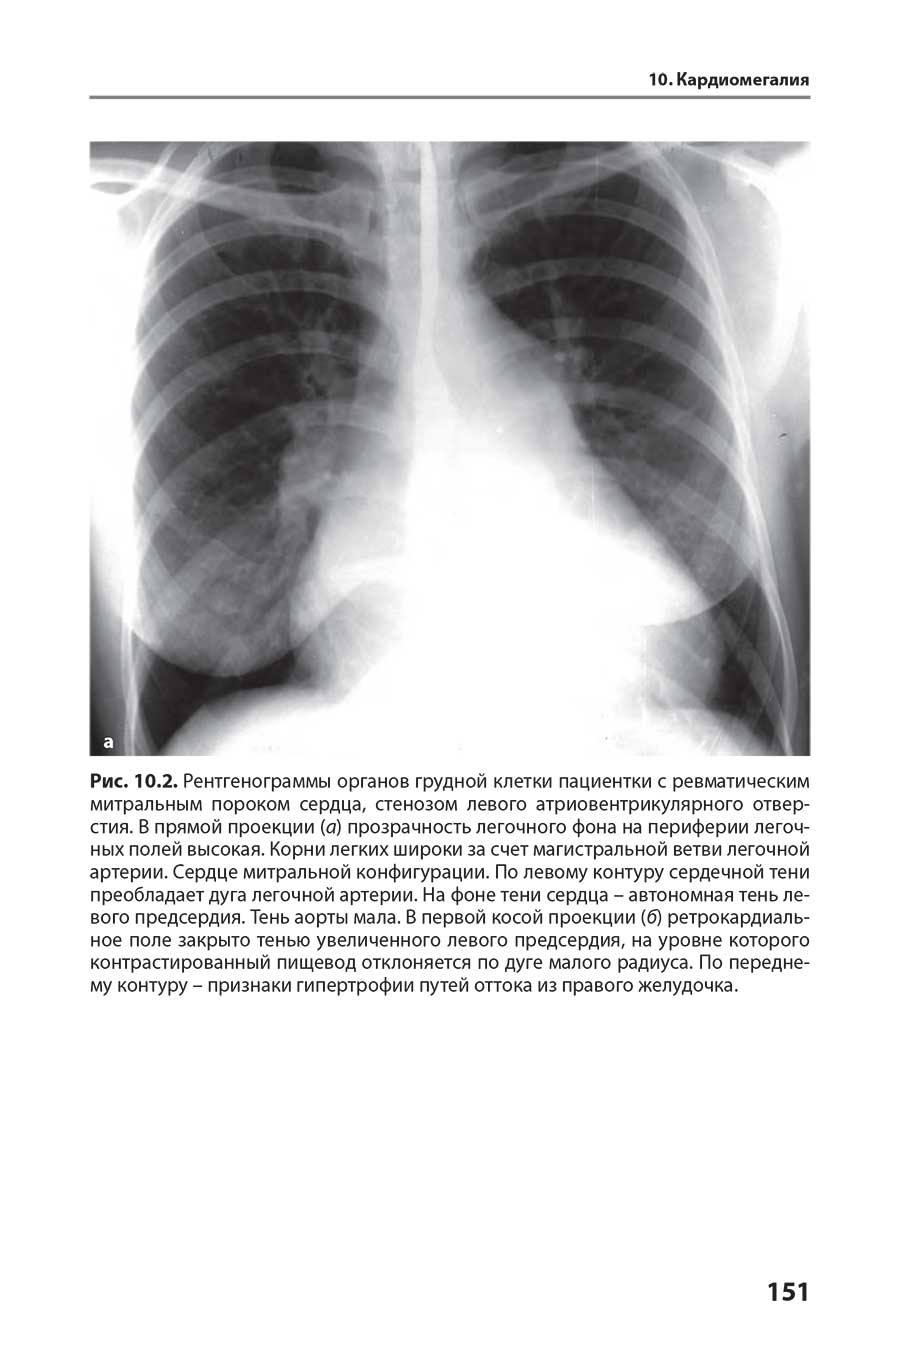 Рис. 10.2. Рентгенограммы органов грудной клетки пациентки с ревматическим митральным пороком сердца, стенозом левого атриовентрикулярного отверстия